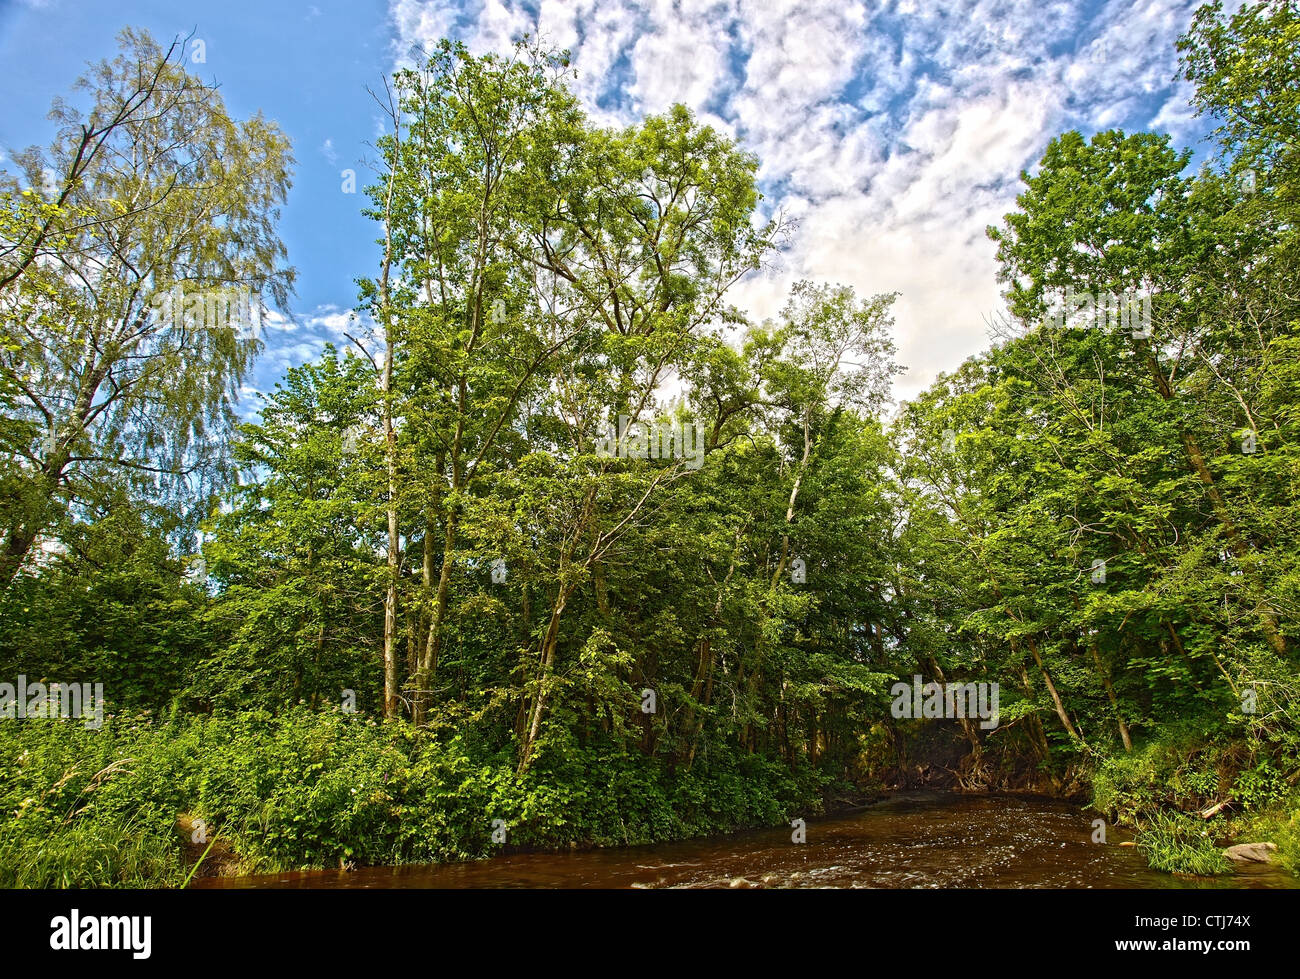 Fiume nella foresta , fical lunghezza 17 mm. Immagine elaborata con la tecnica HDR Foto Stock